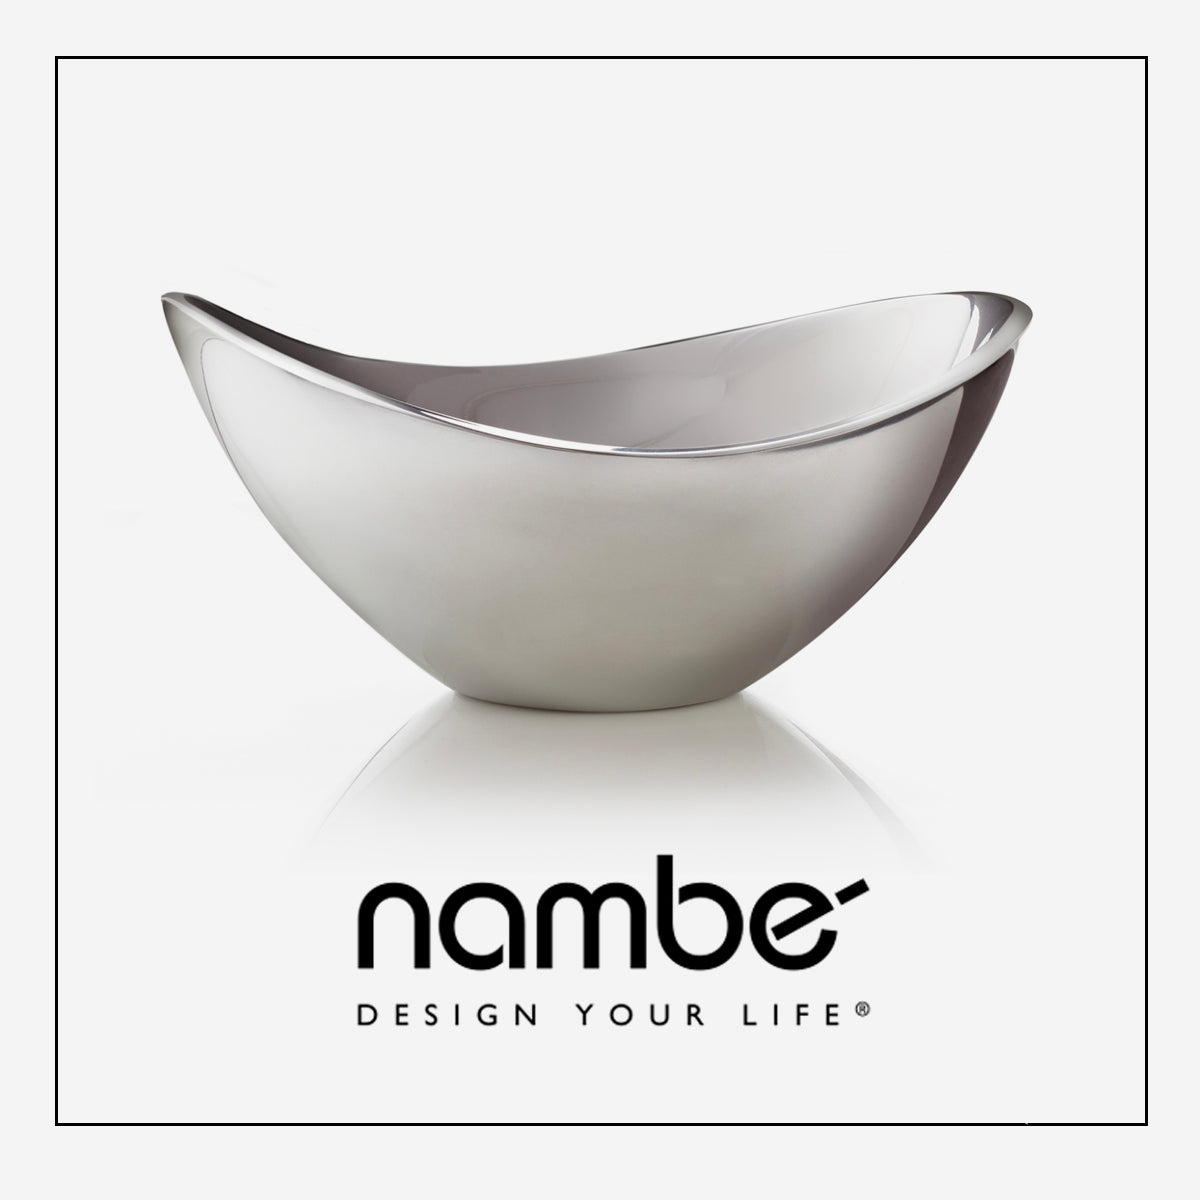 Nambe Brand